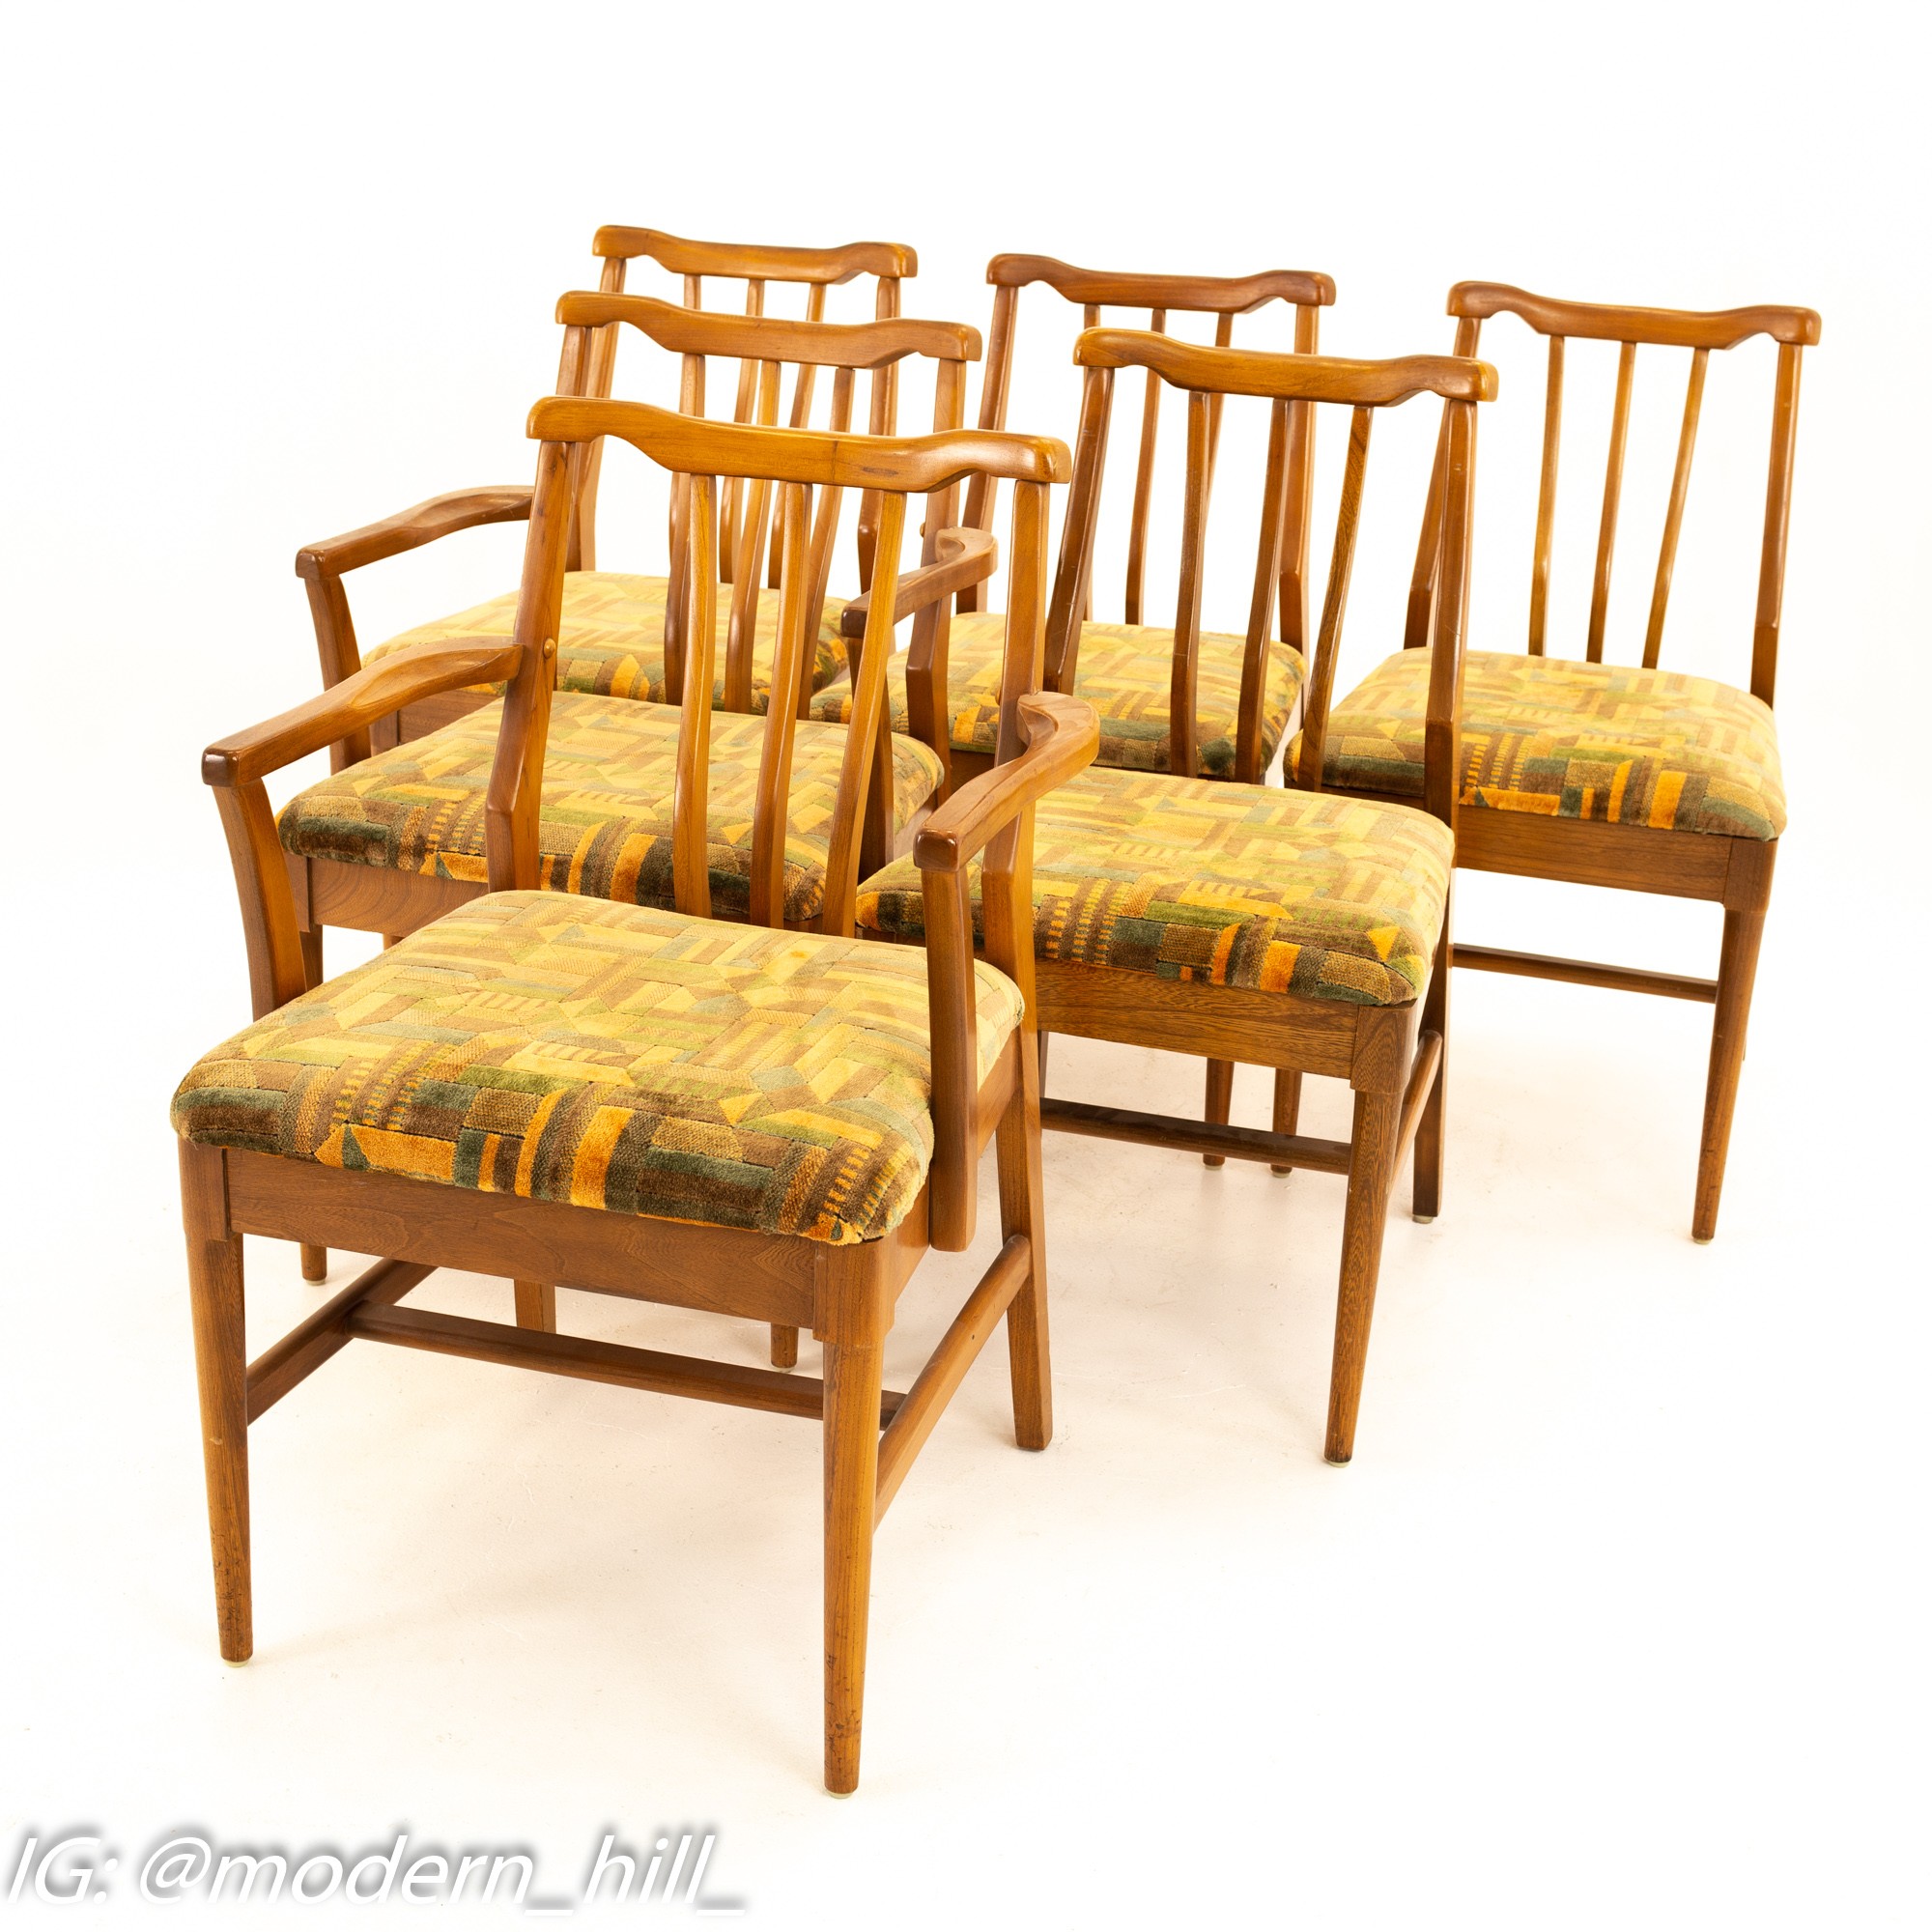 Jack Lenor Larsen Style Mid Century Walnut Dining Chairs - Set of 6